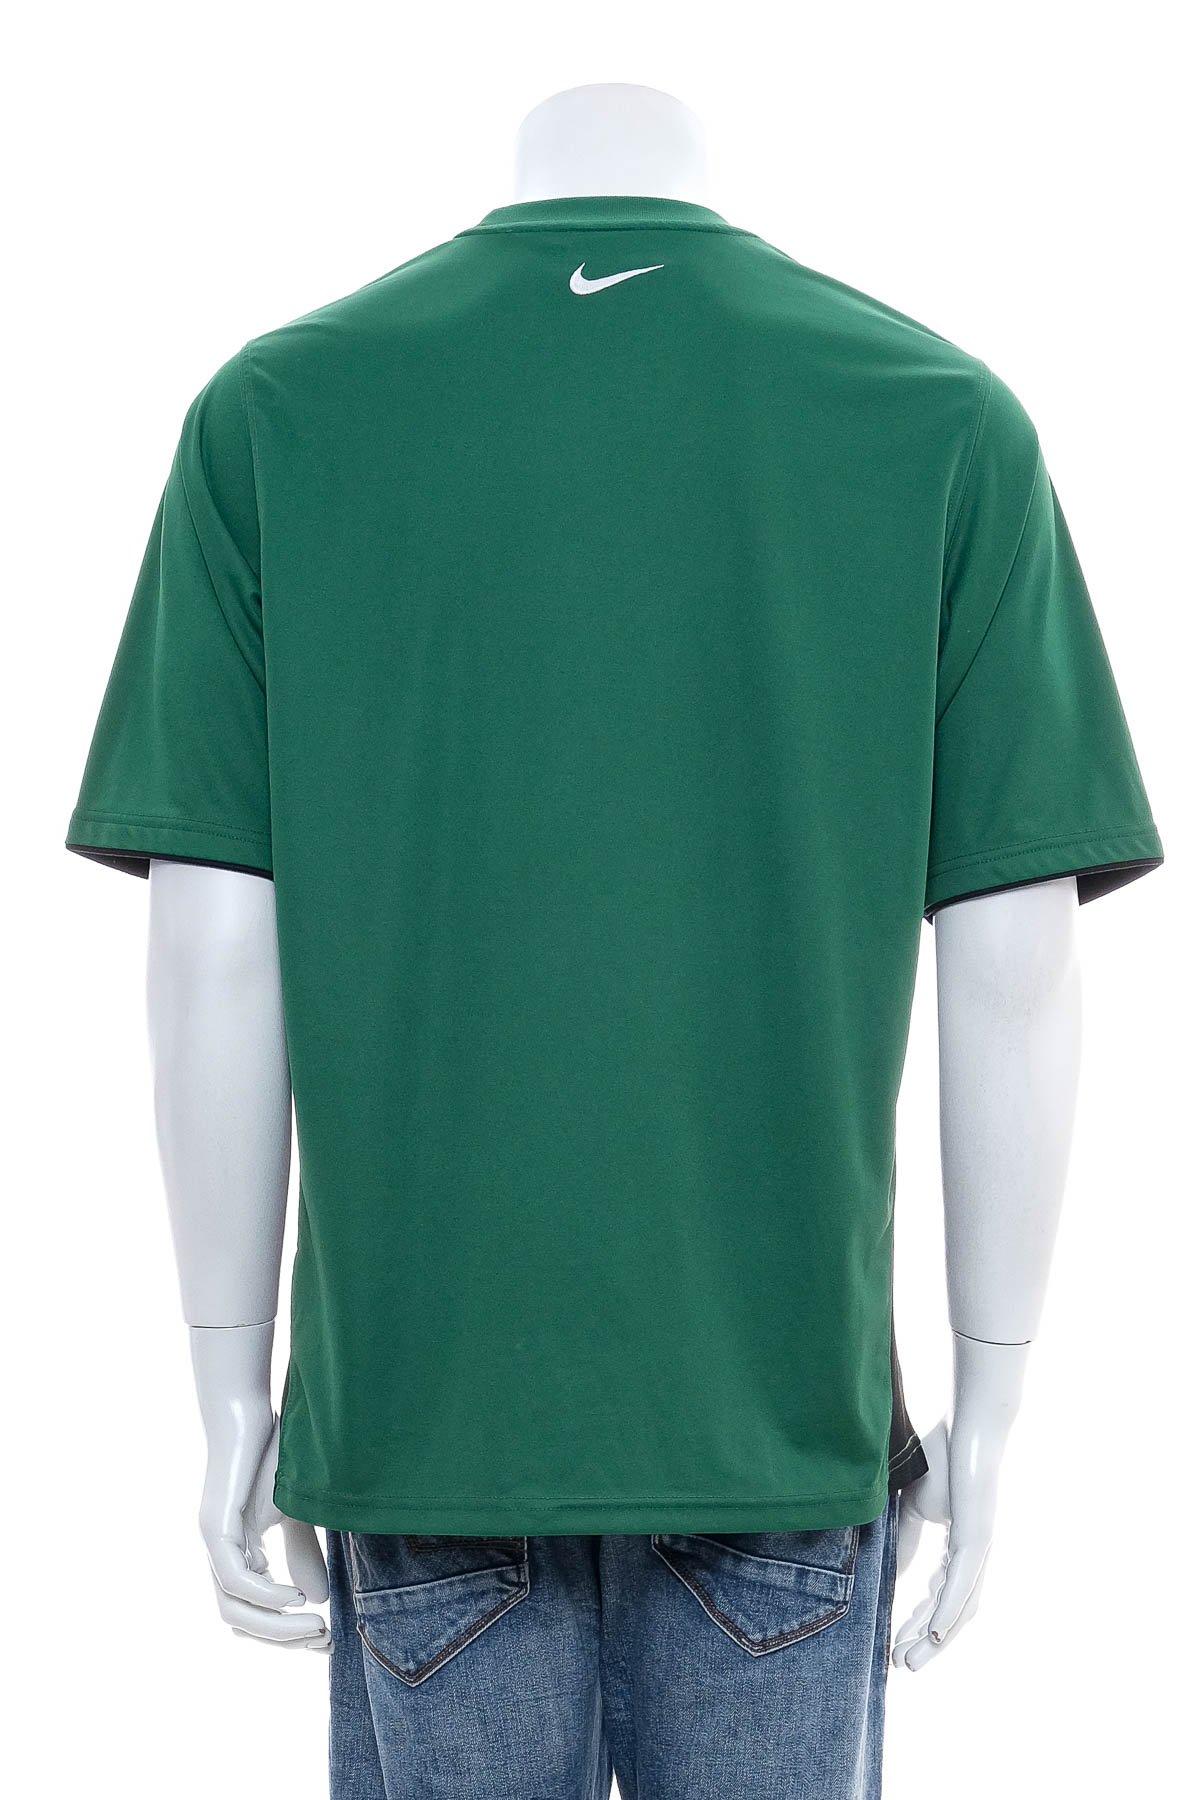 Ανδρικό μπλουζάκι - NIKE - 1